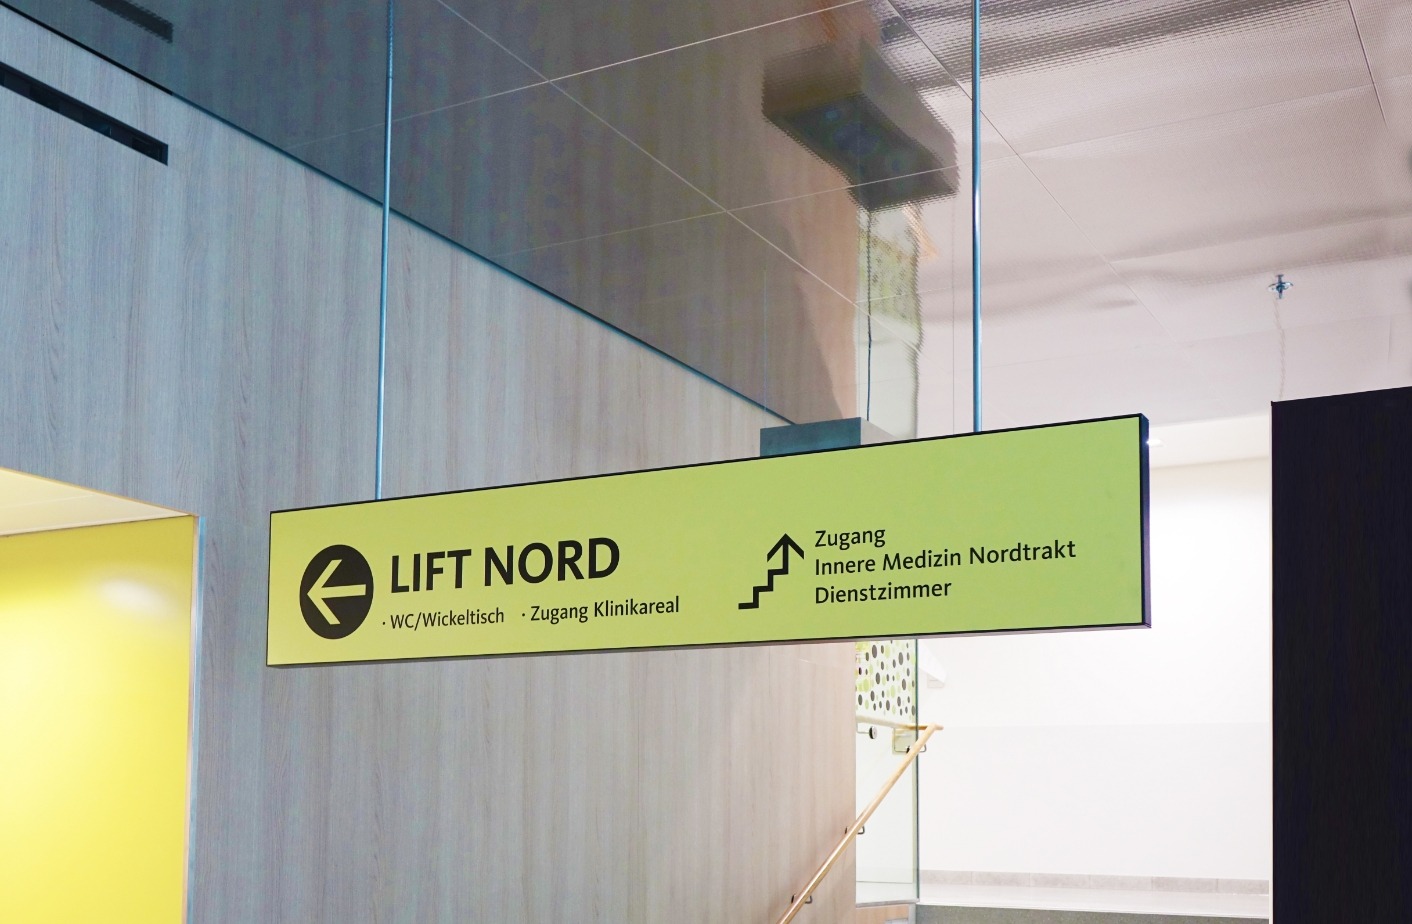 Hängeschild "Lift Nord" Klinik Tirol